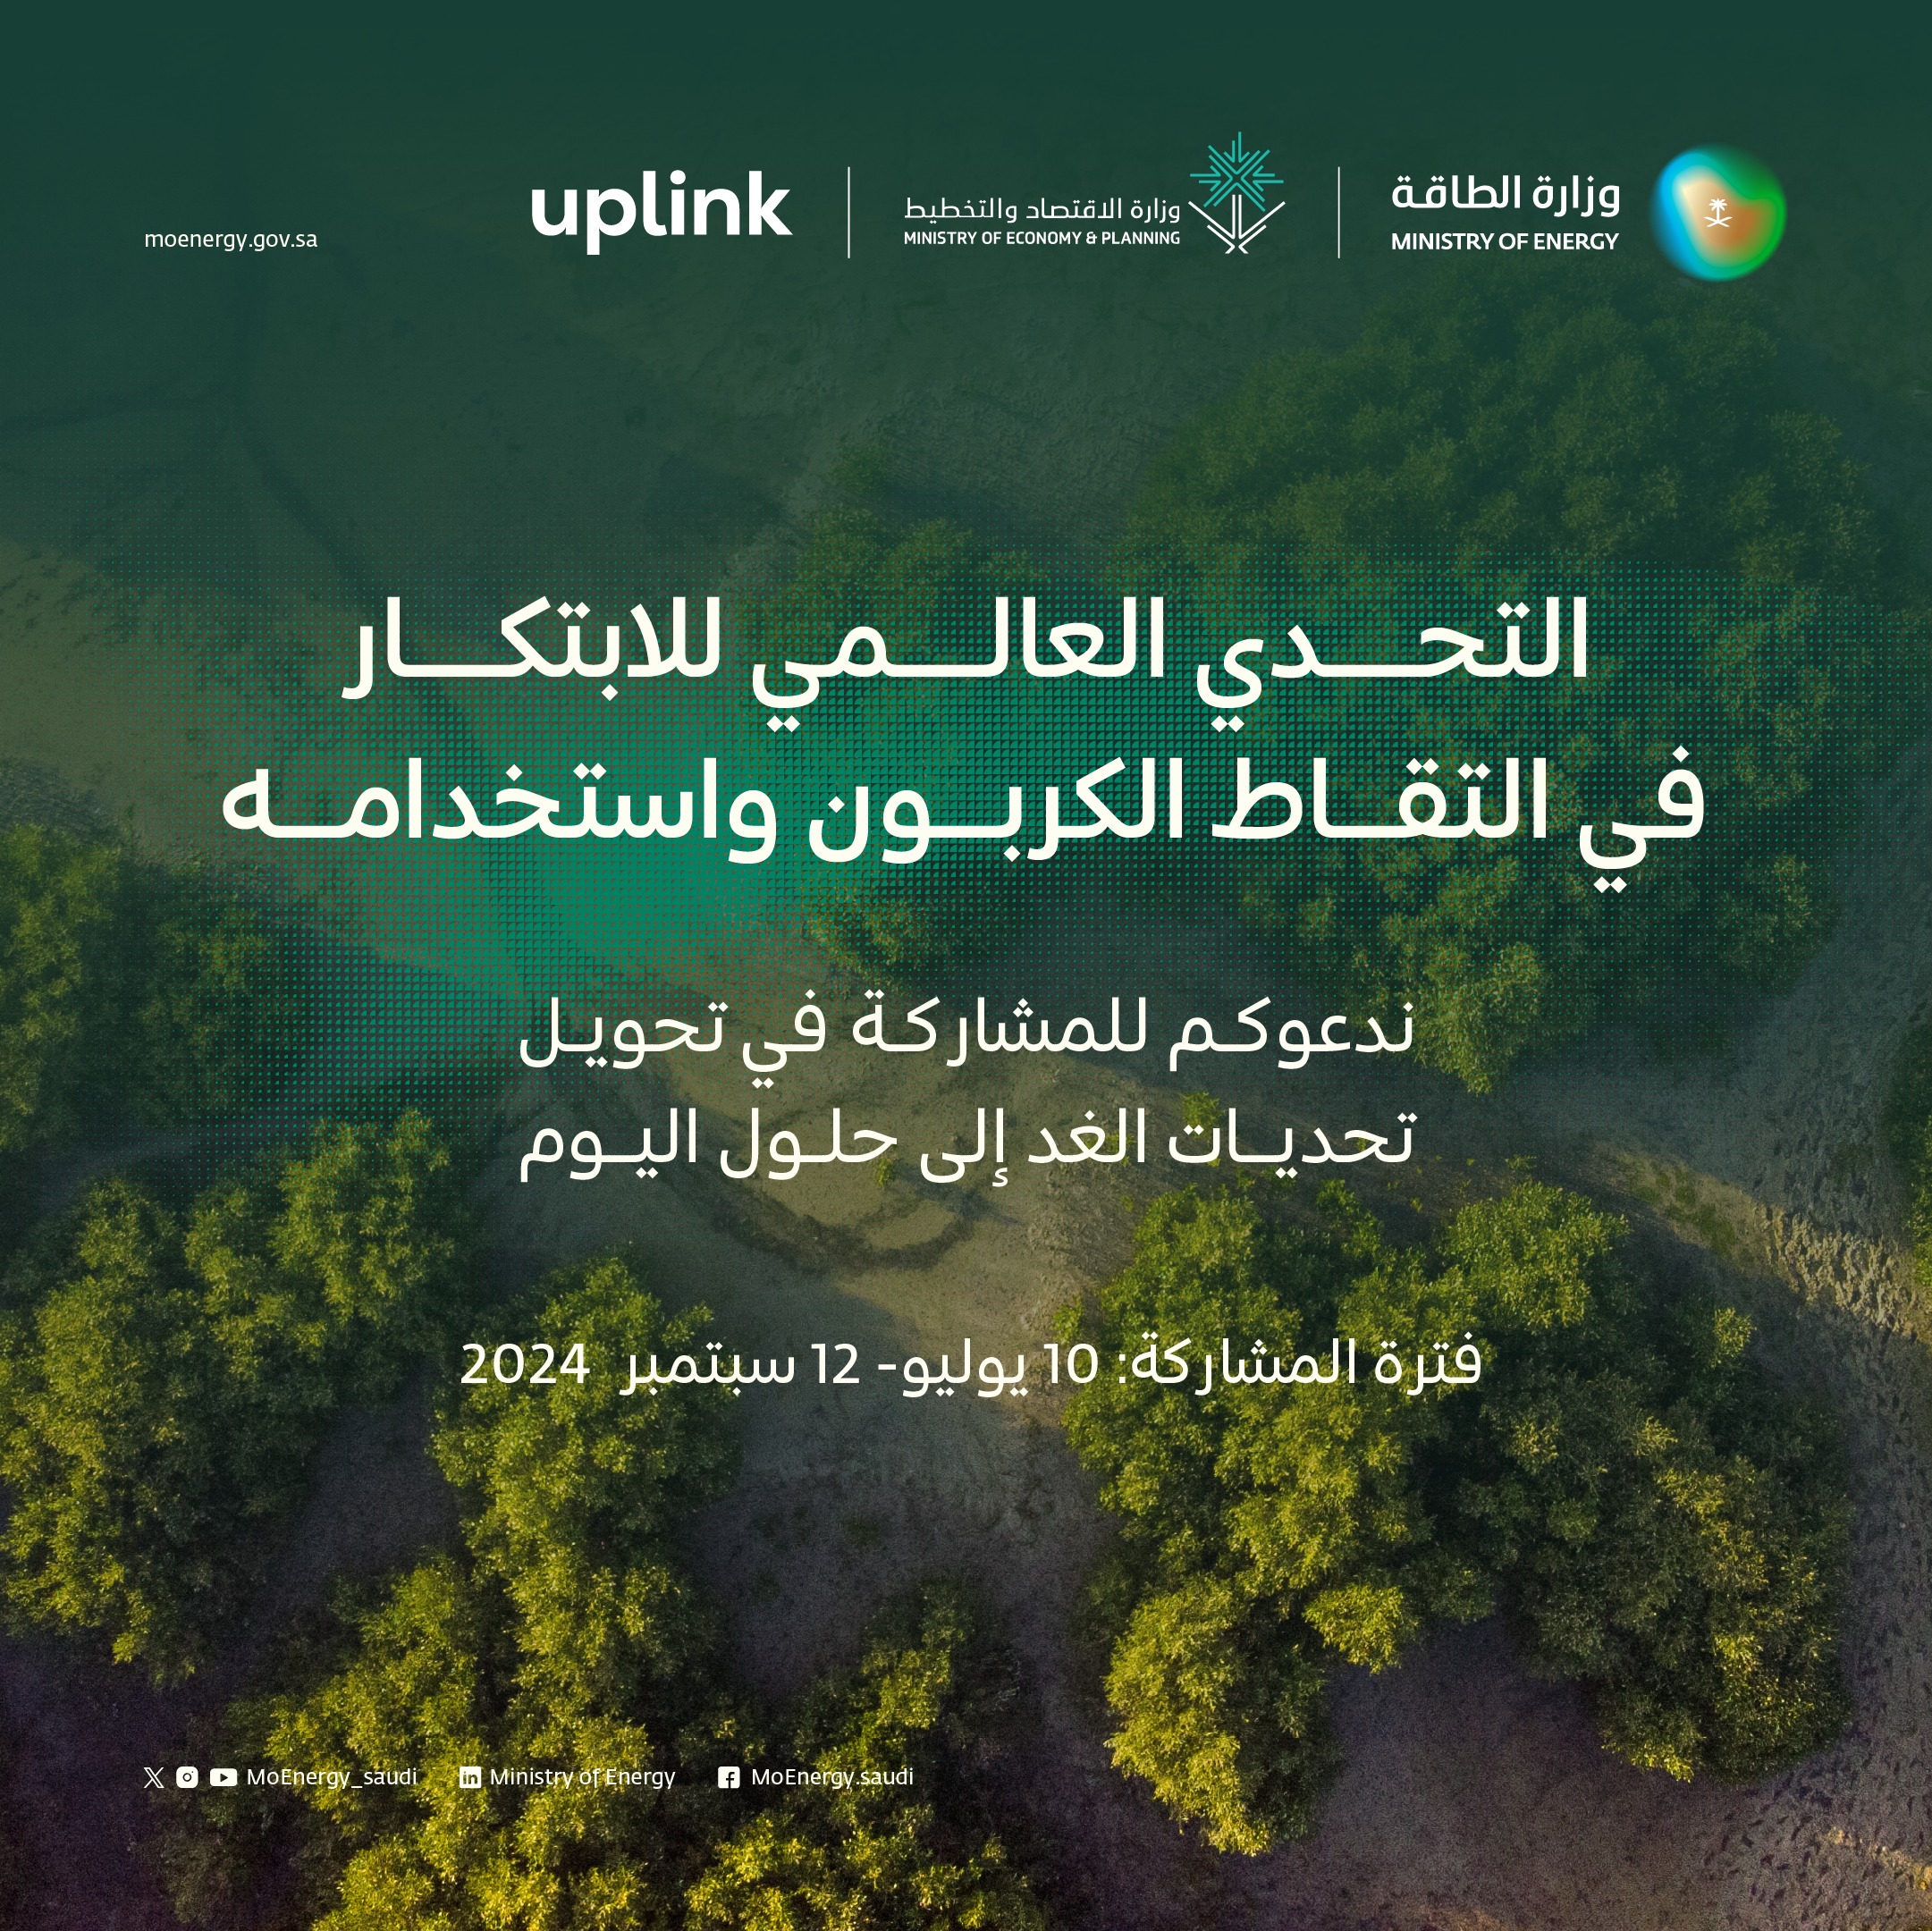 وزارة الطاقة ووزارة الاقتصاد والتخطيط بالتعاون مع منصة "uplink" تطلقان تحديّاً عالميّاً حول التقاط الكربون واستخدامه